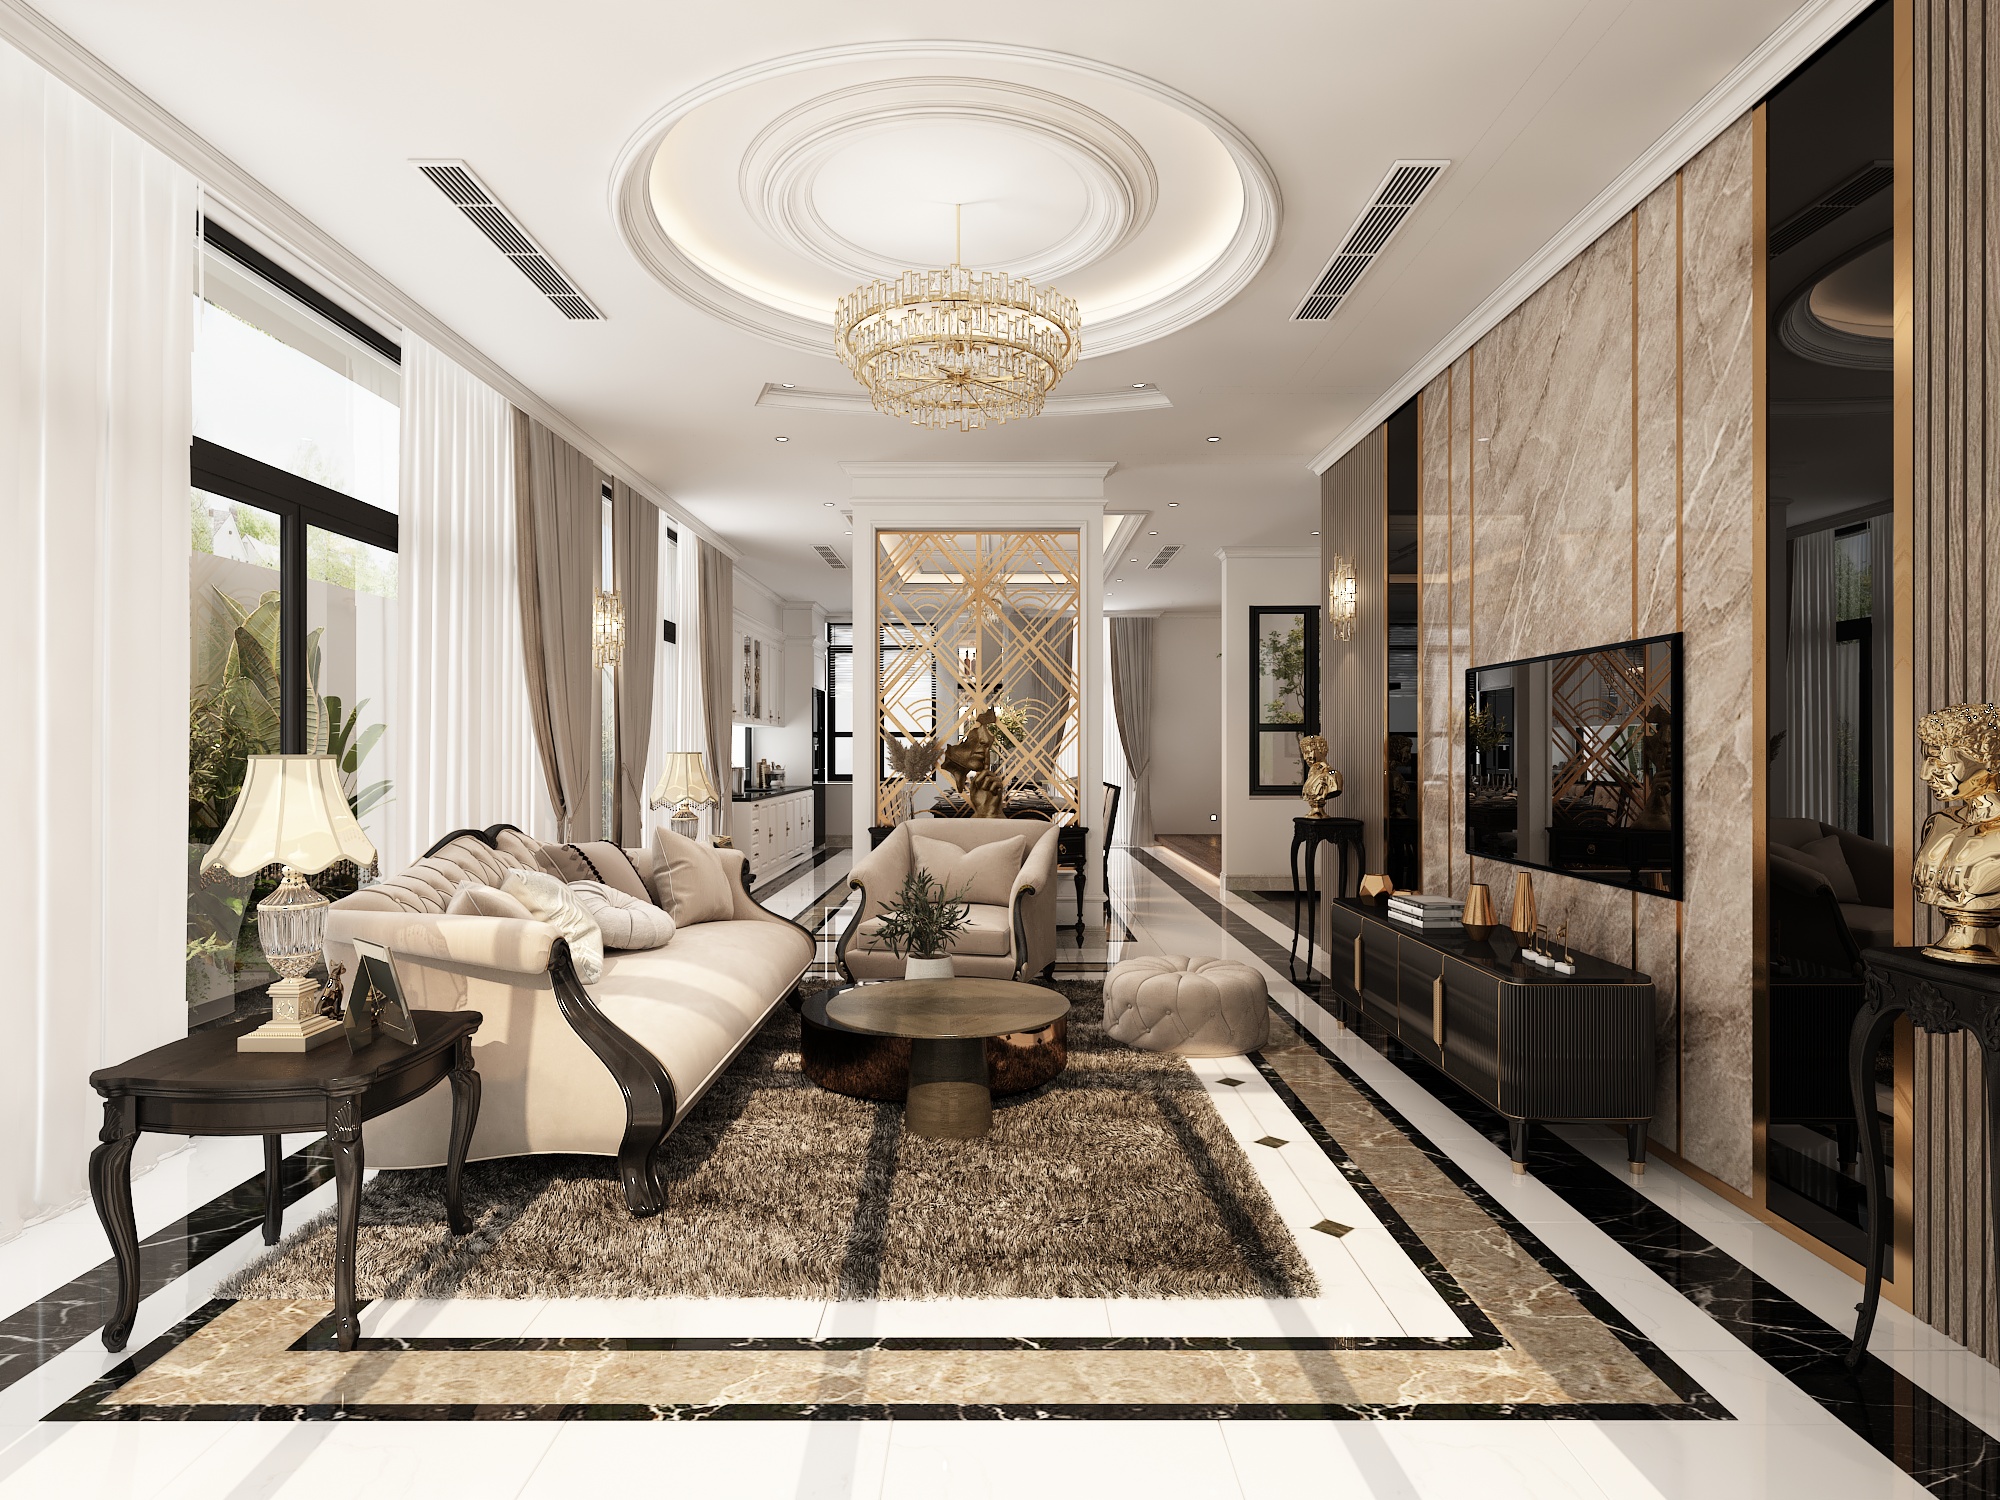 Thiết kế nội thất Biệt Thự tại Hồ Chí Minh BIỆT THỰ QUẬN 9 1593136067 2